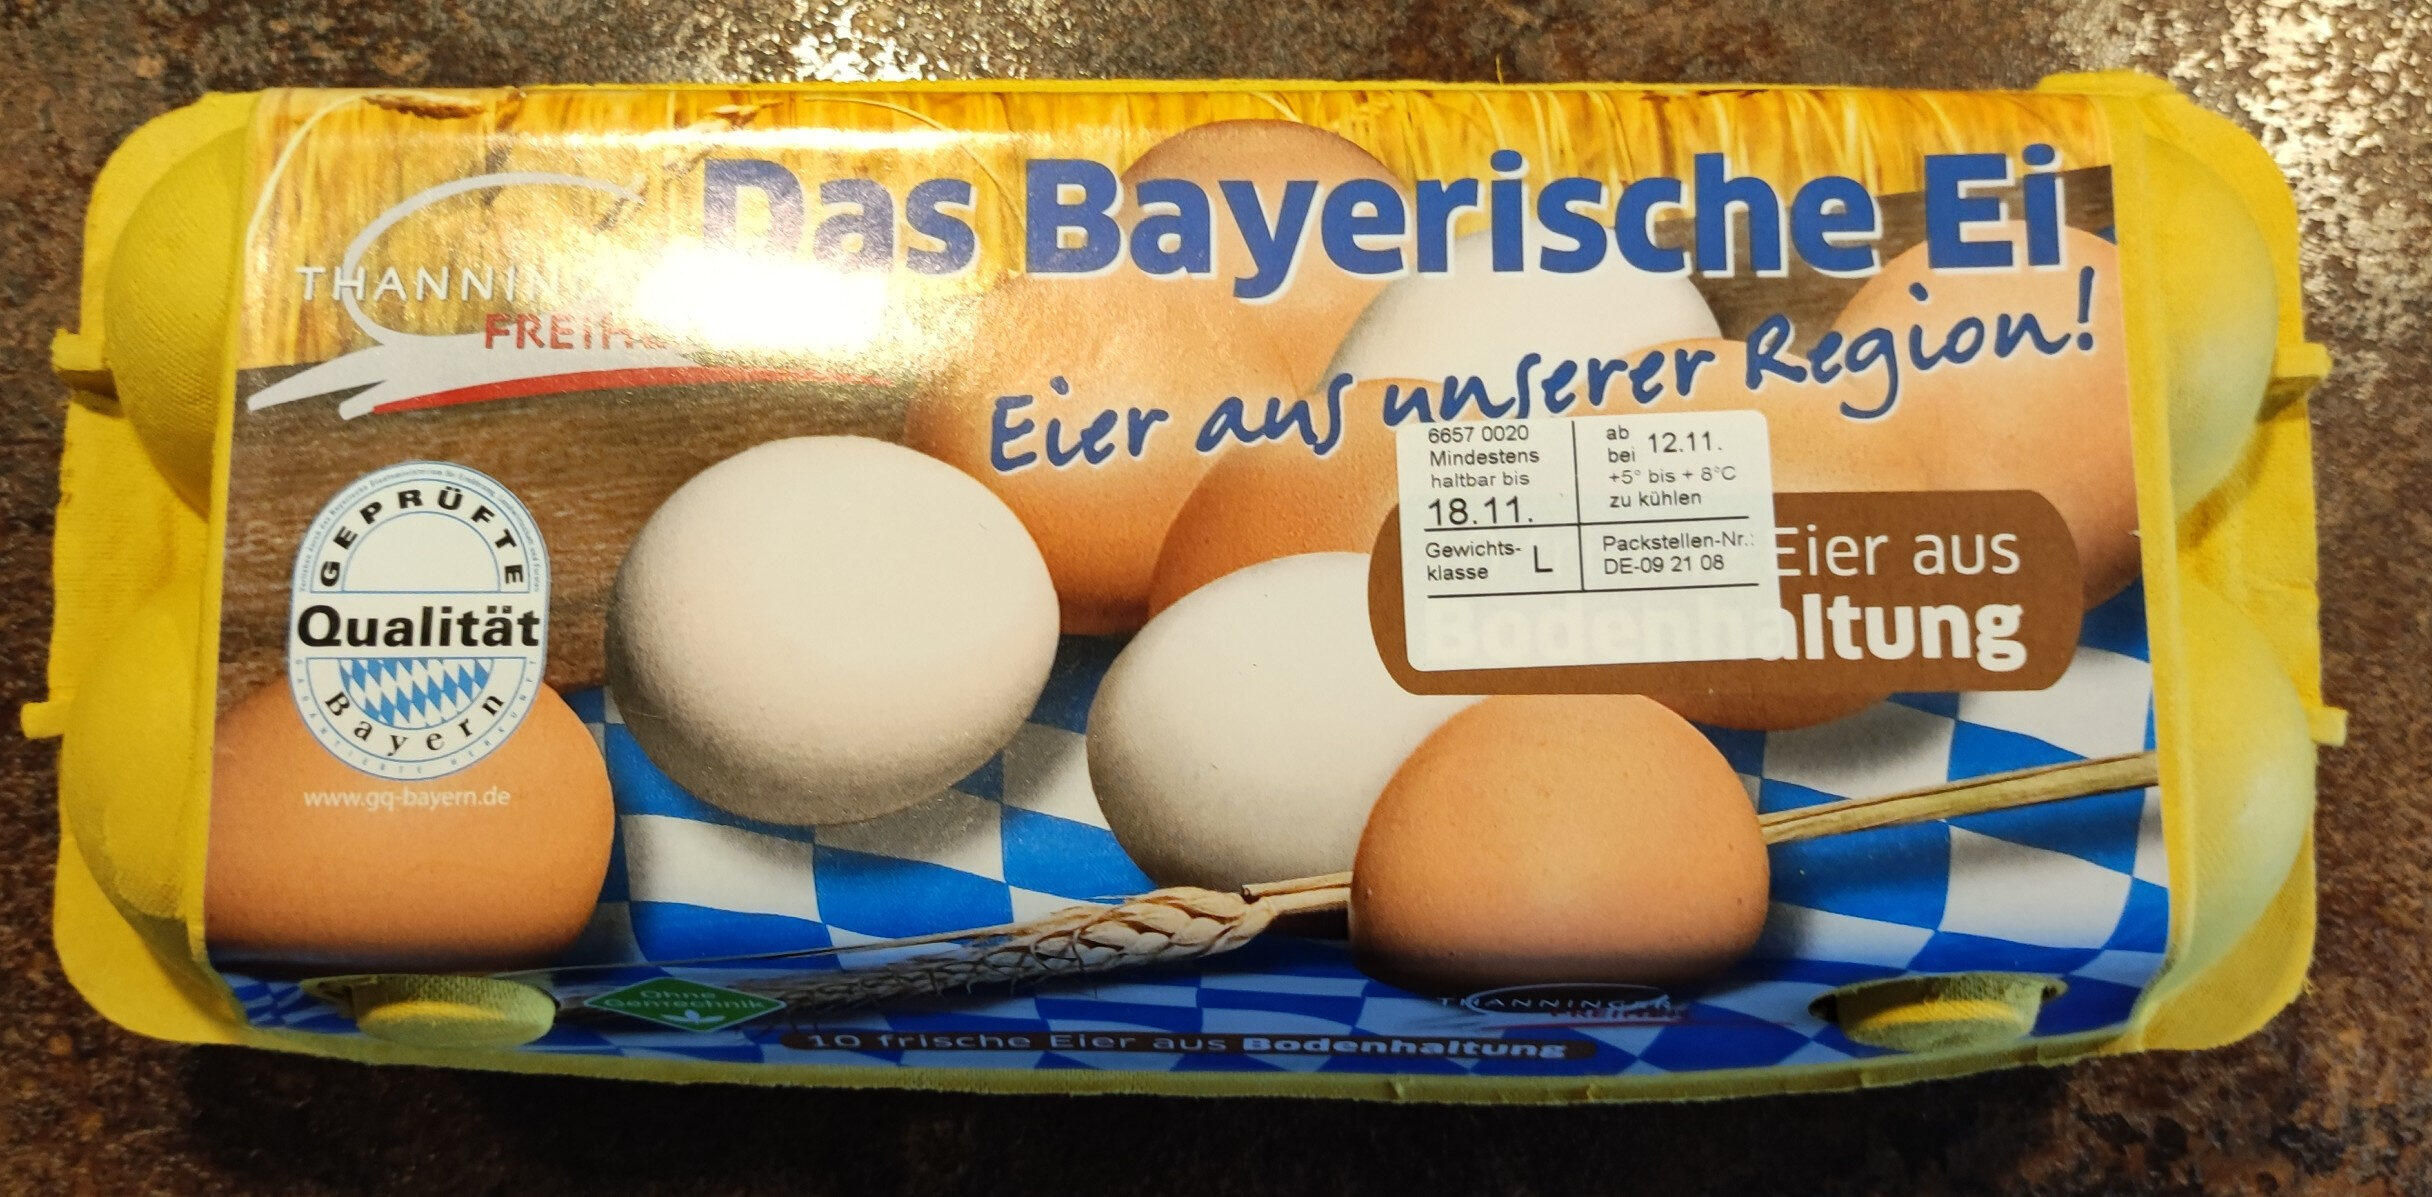 Das Bayerische Ei - Product - de